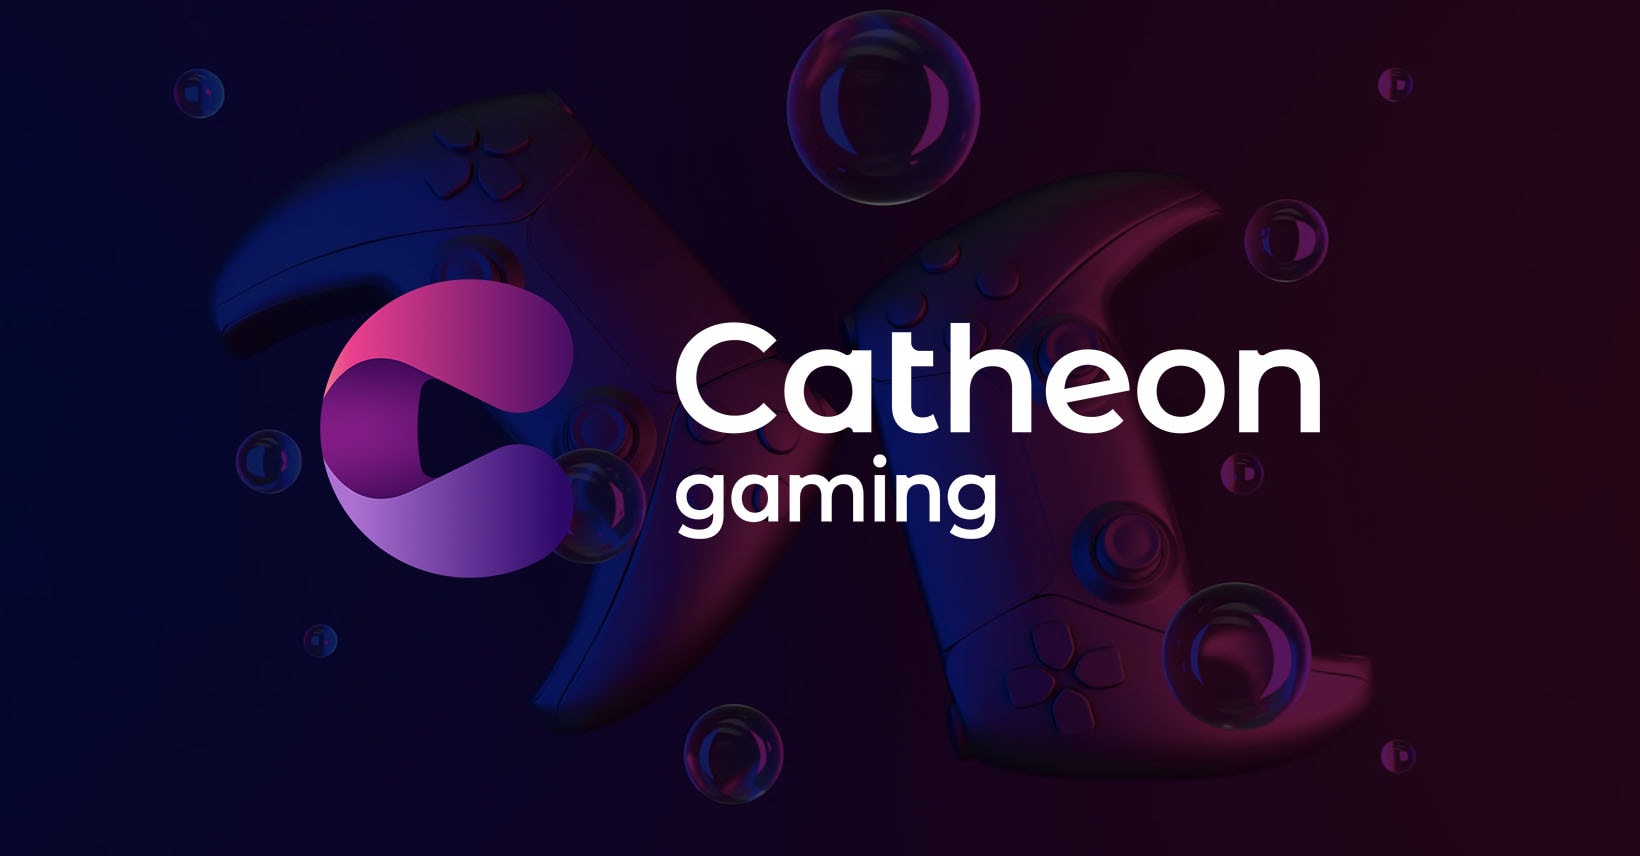 Catheon Gaming має 25 блокчейн-ігор, 50 мільйонів завантажень і величезні плани